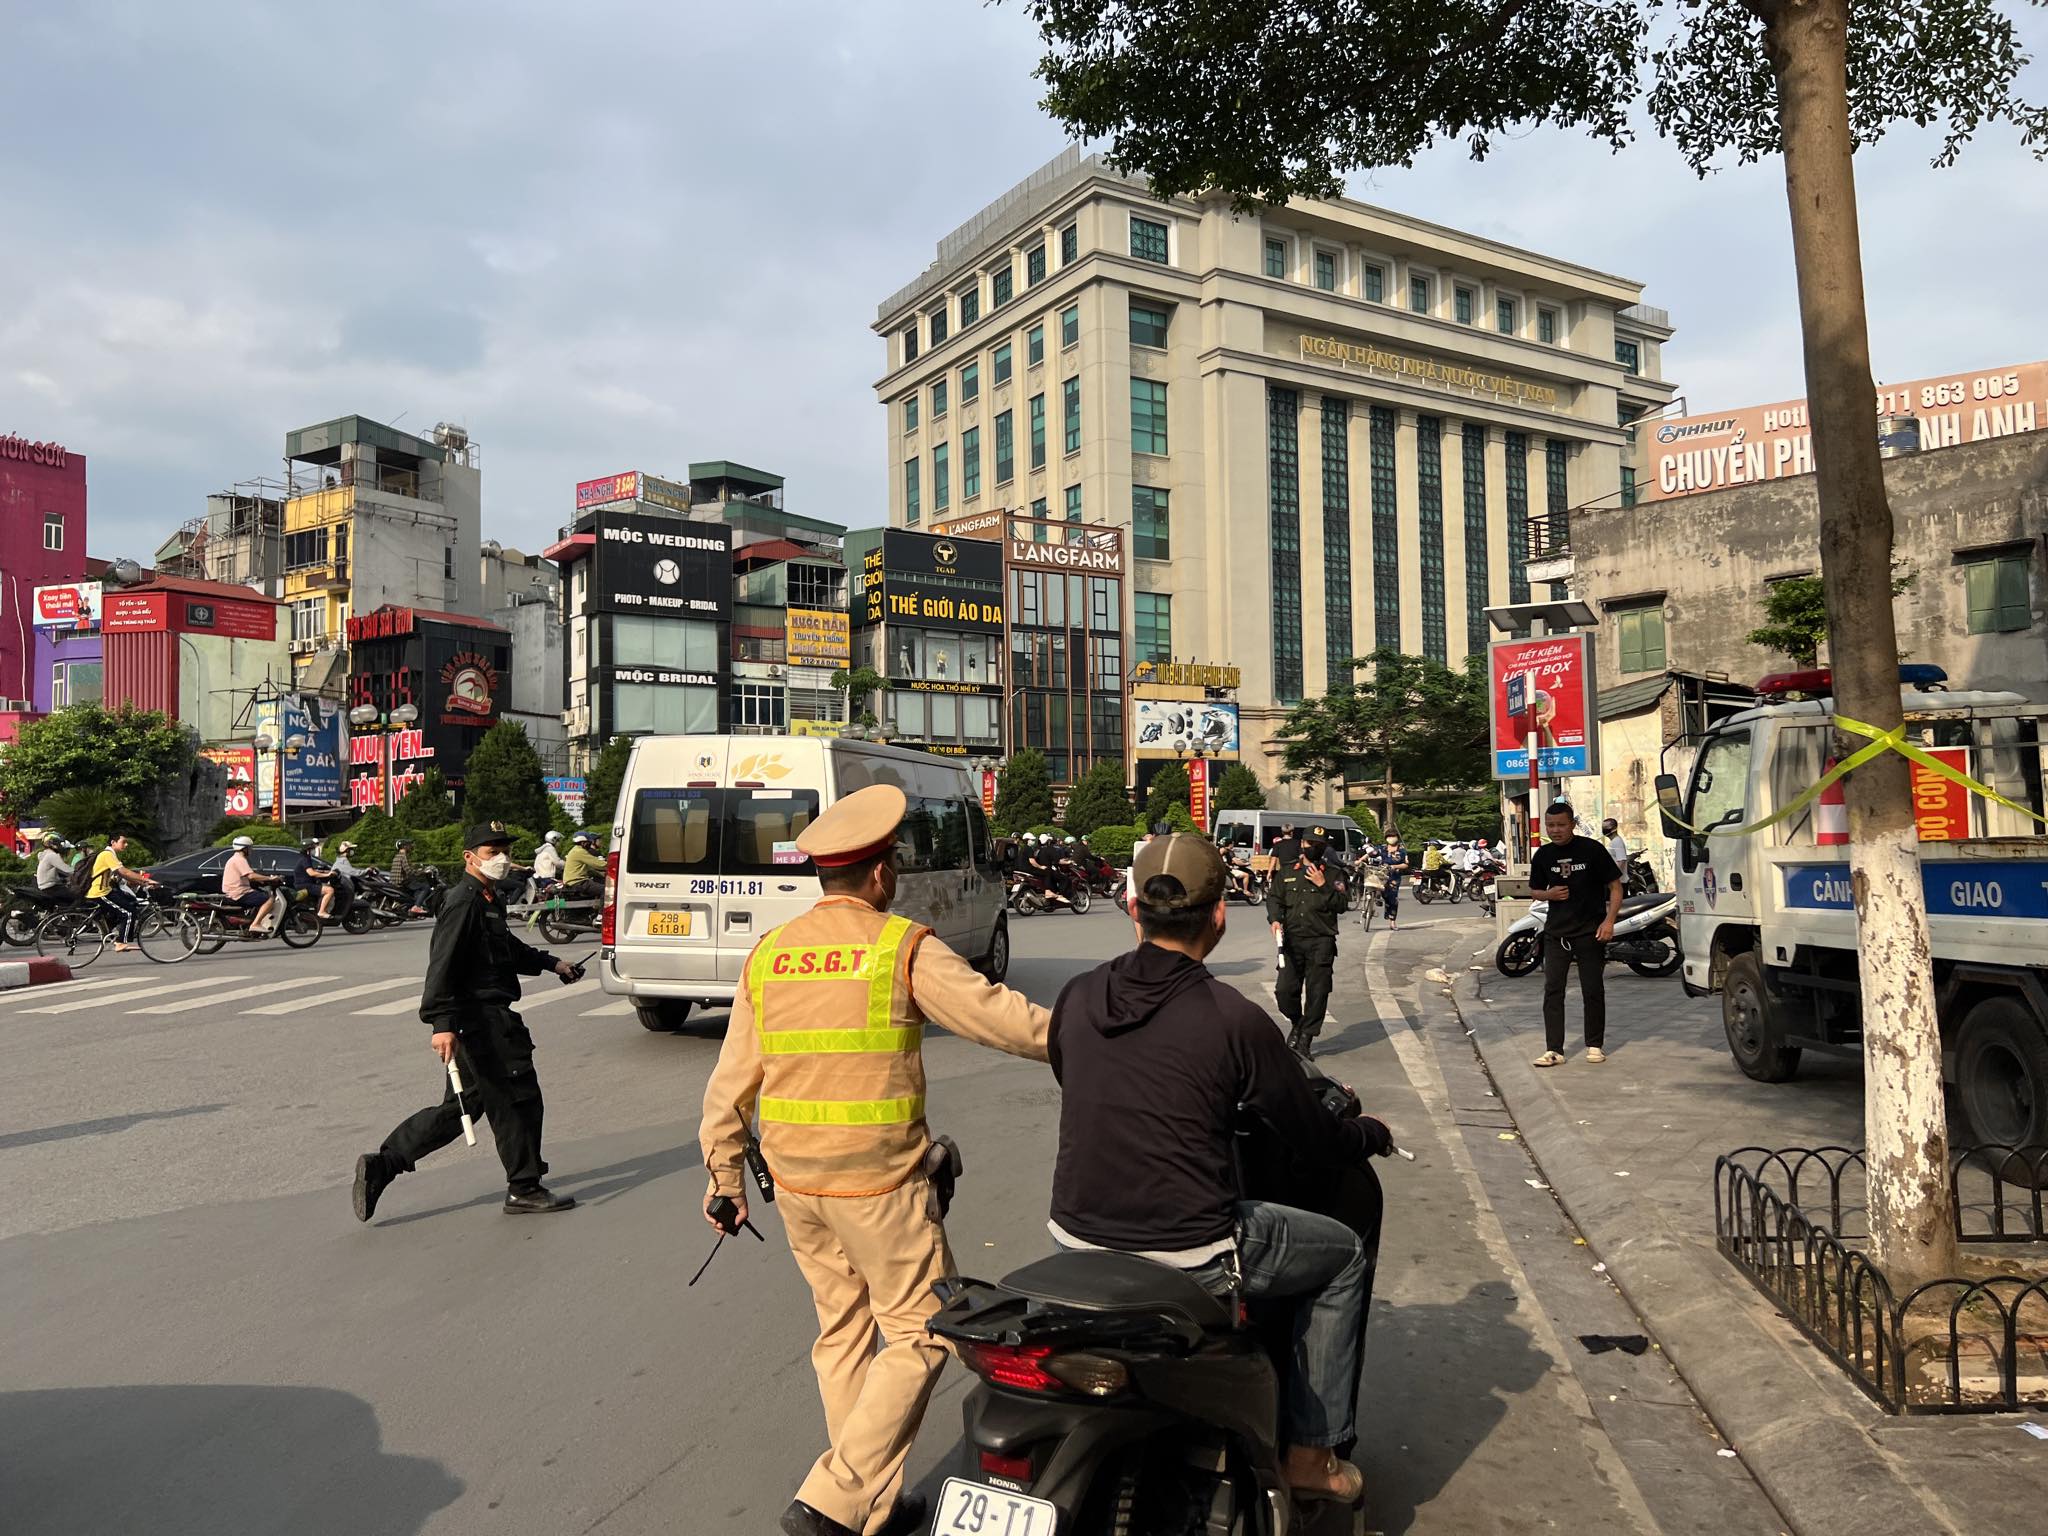 Ngày đầu 5 tổ công tác đặc biệt kiểm tra, xử lý vi phạm giao thông ở nội thành Hà Nội - Ảnh 1.